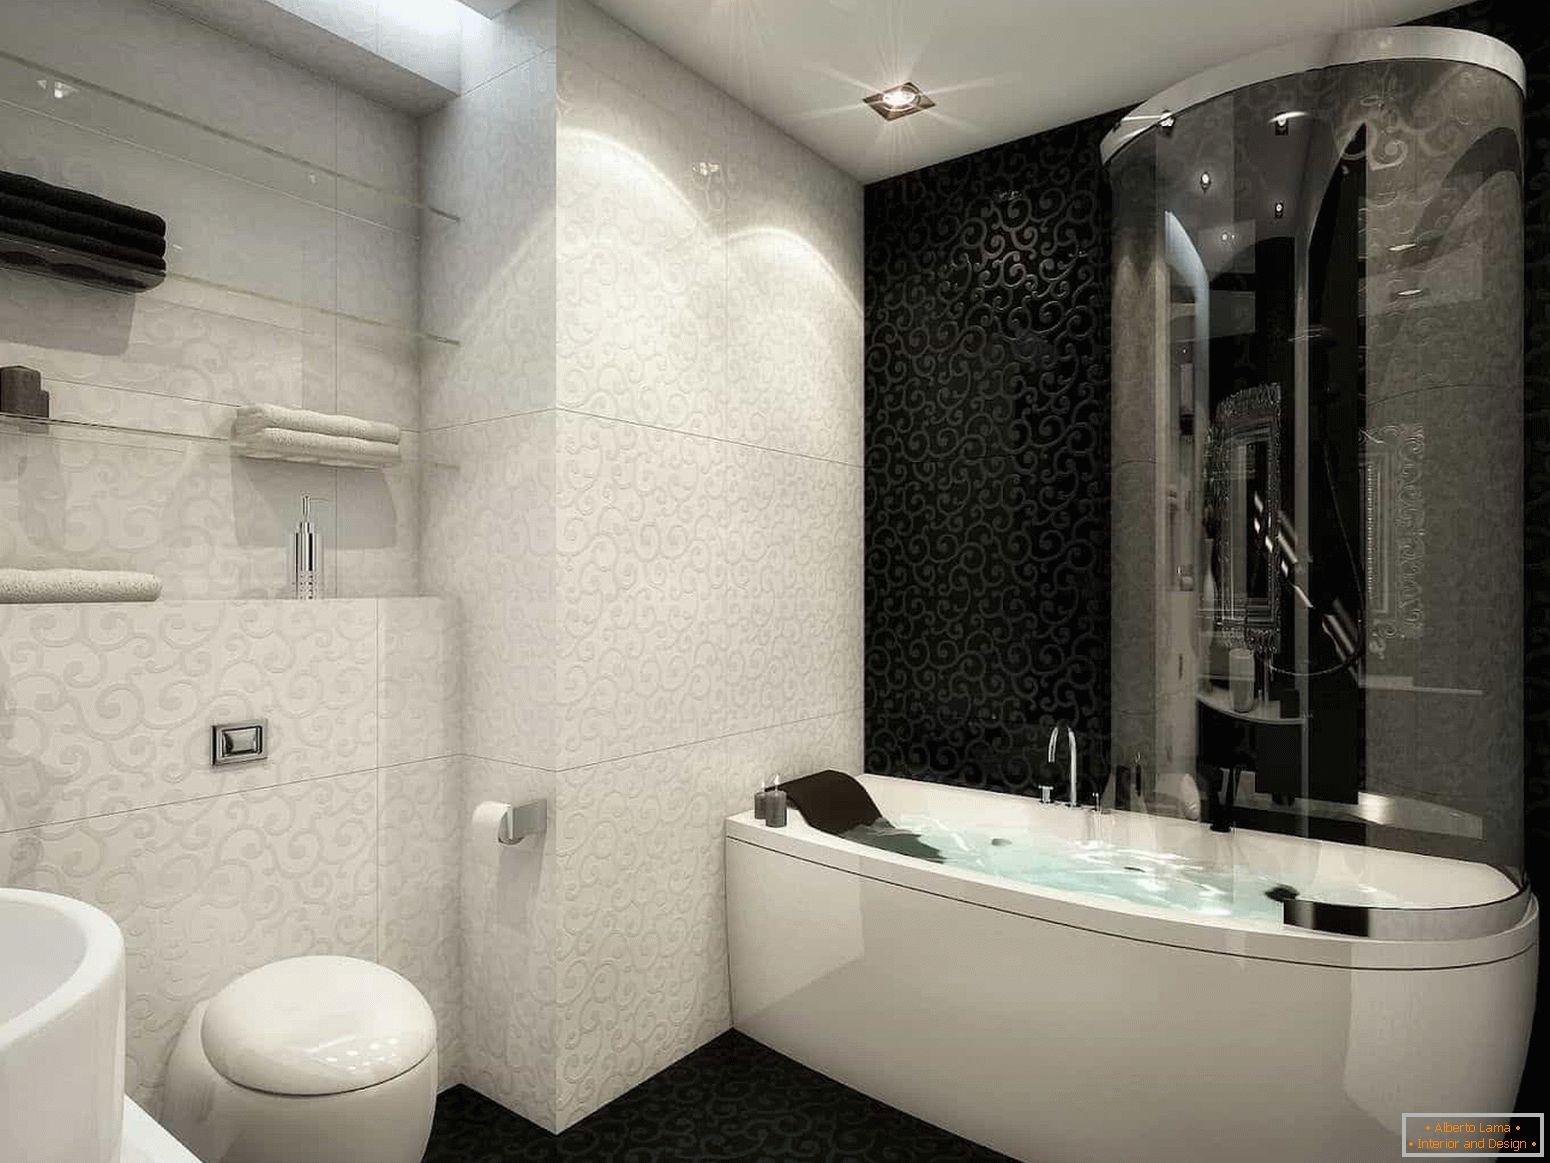 La combinaison de carreaux blancs et noirs dans la salle de bain